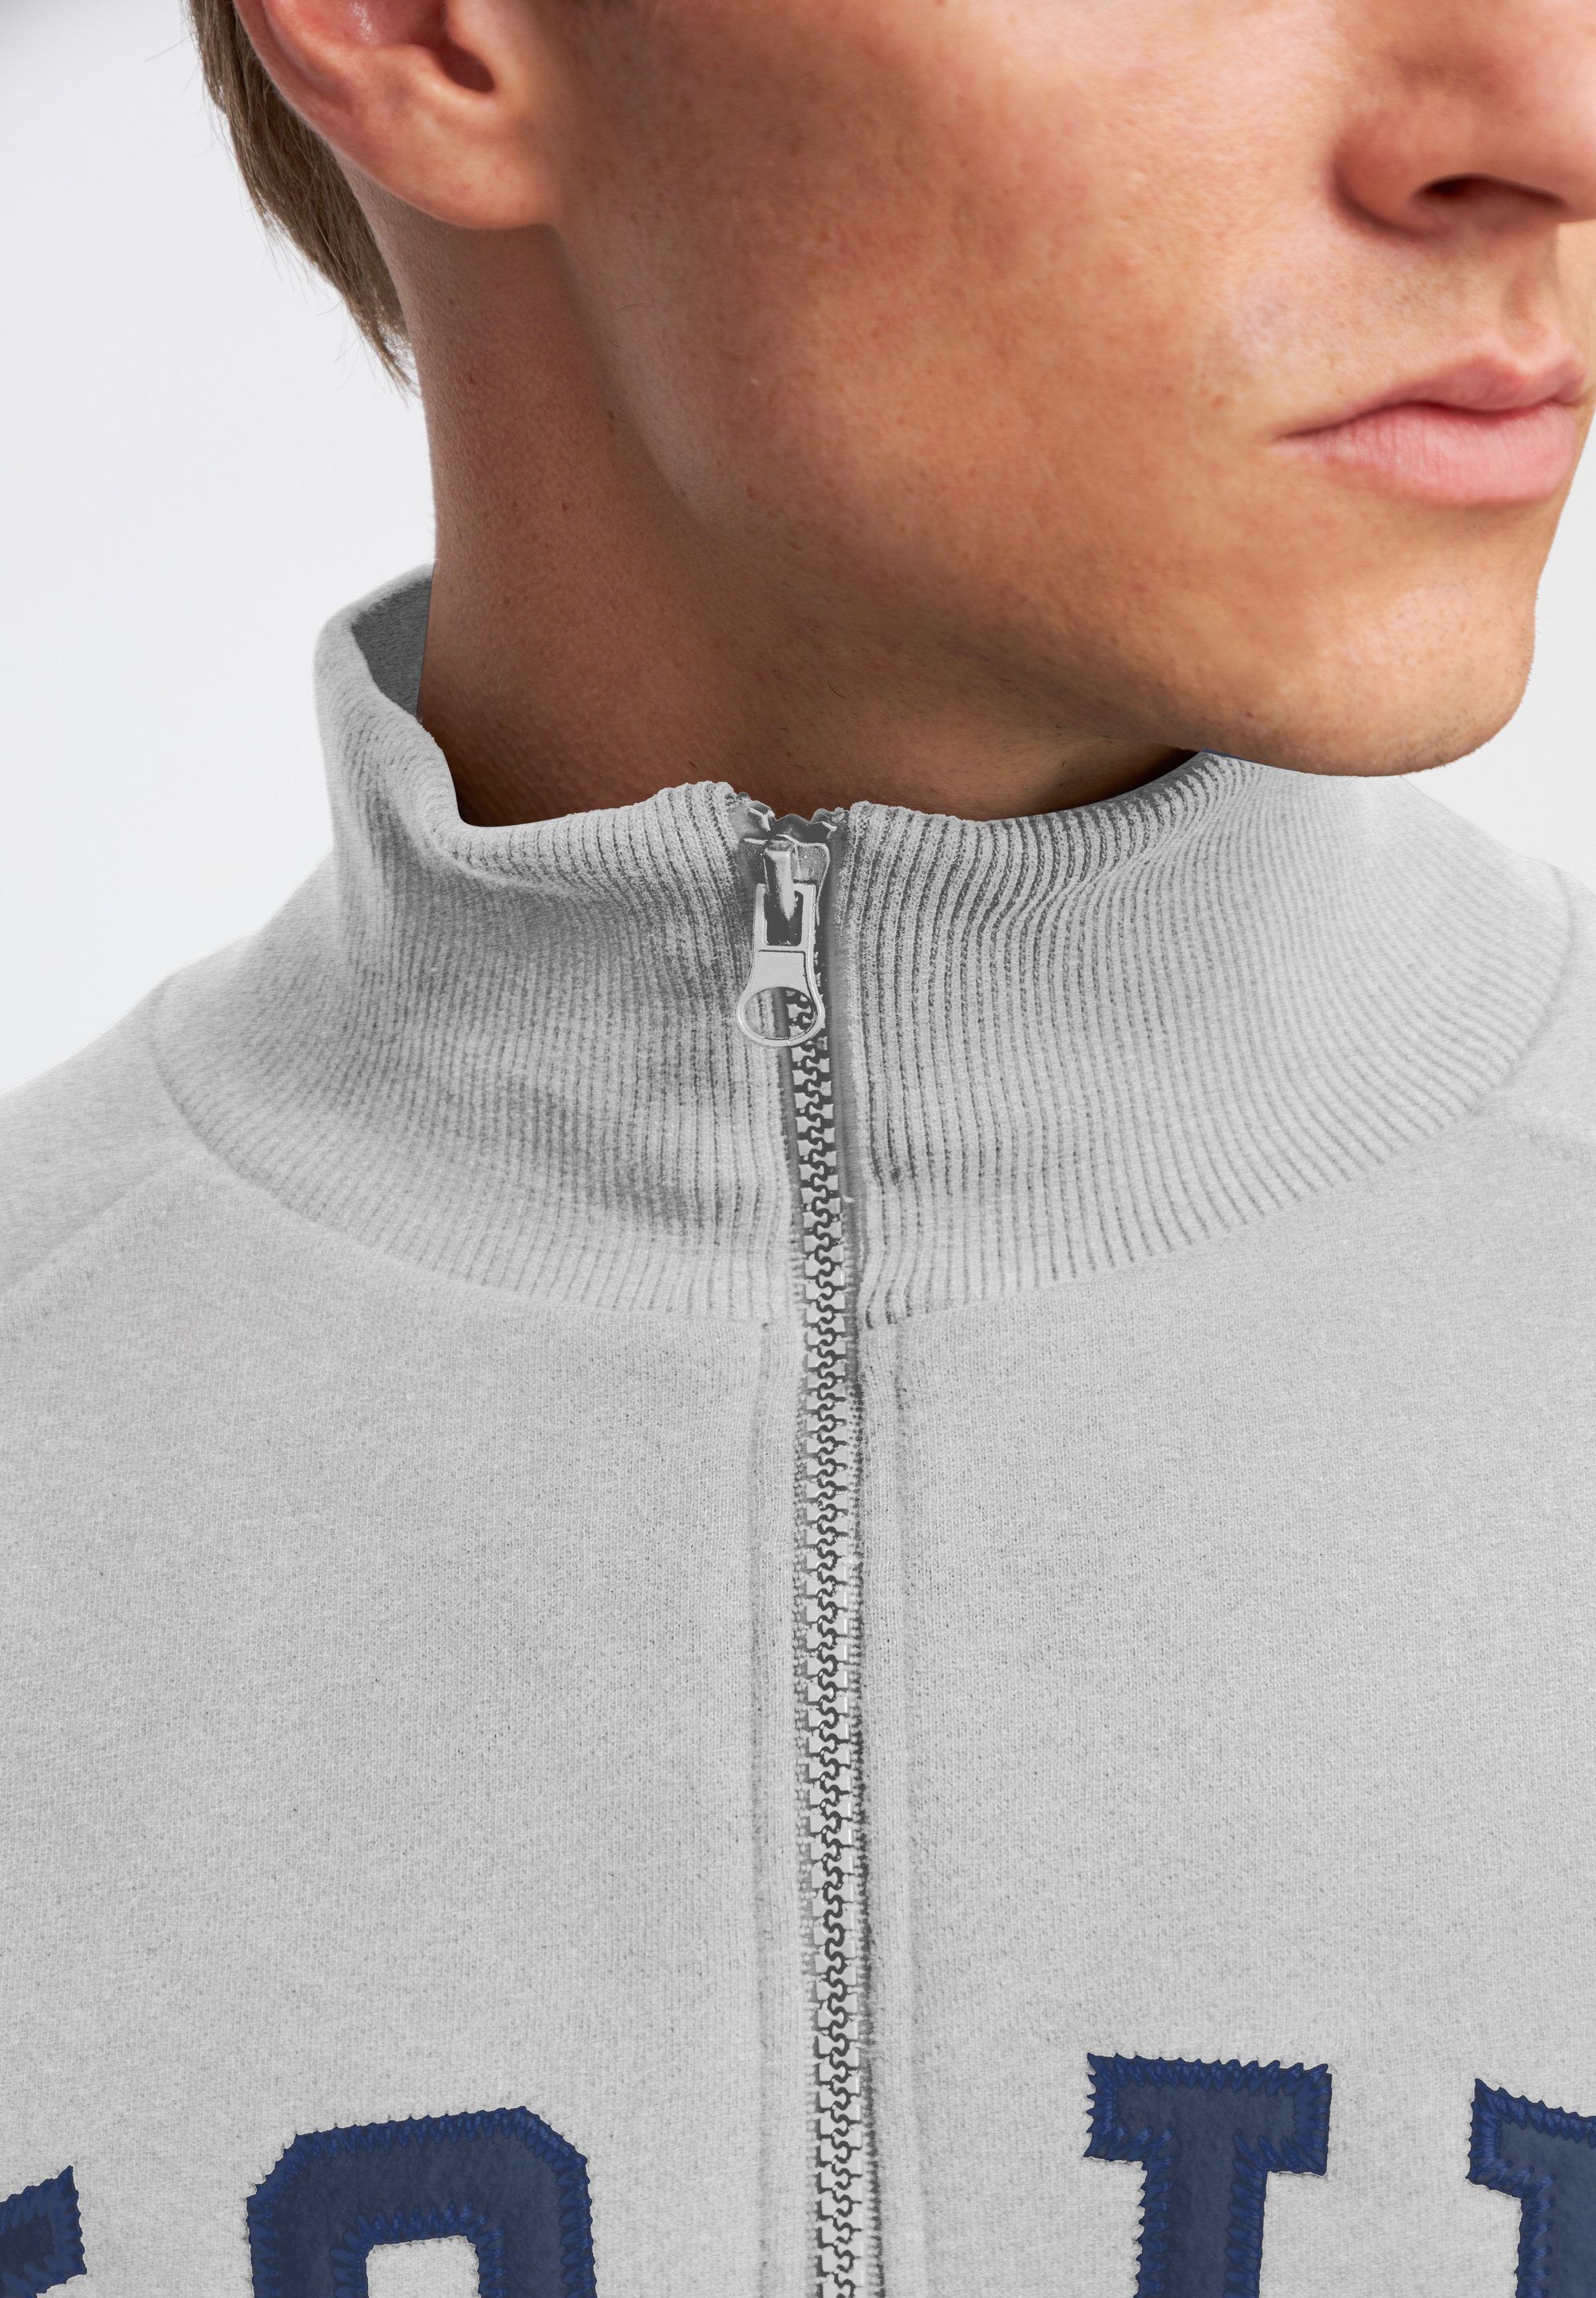 Derbe Portugal Super weich, Sweatshirt MOIN melange in grey Made